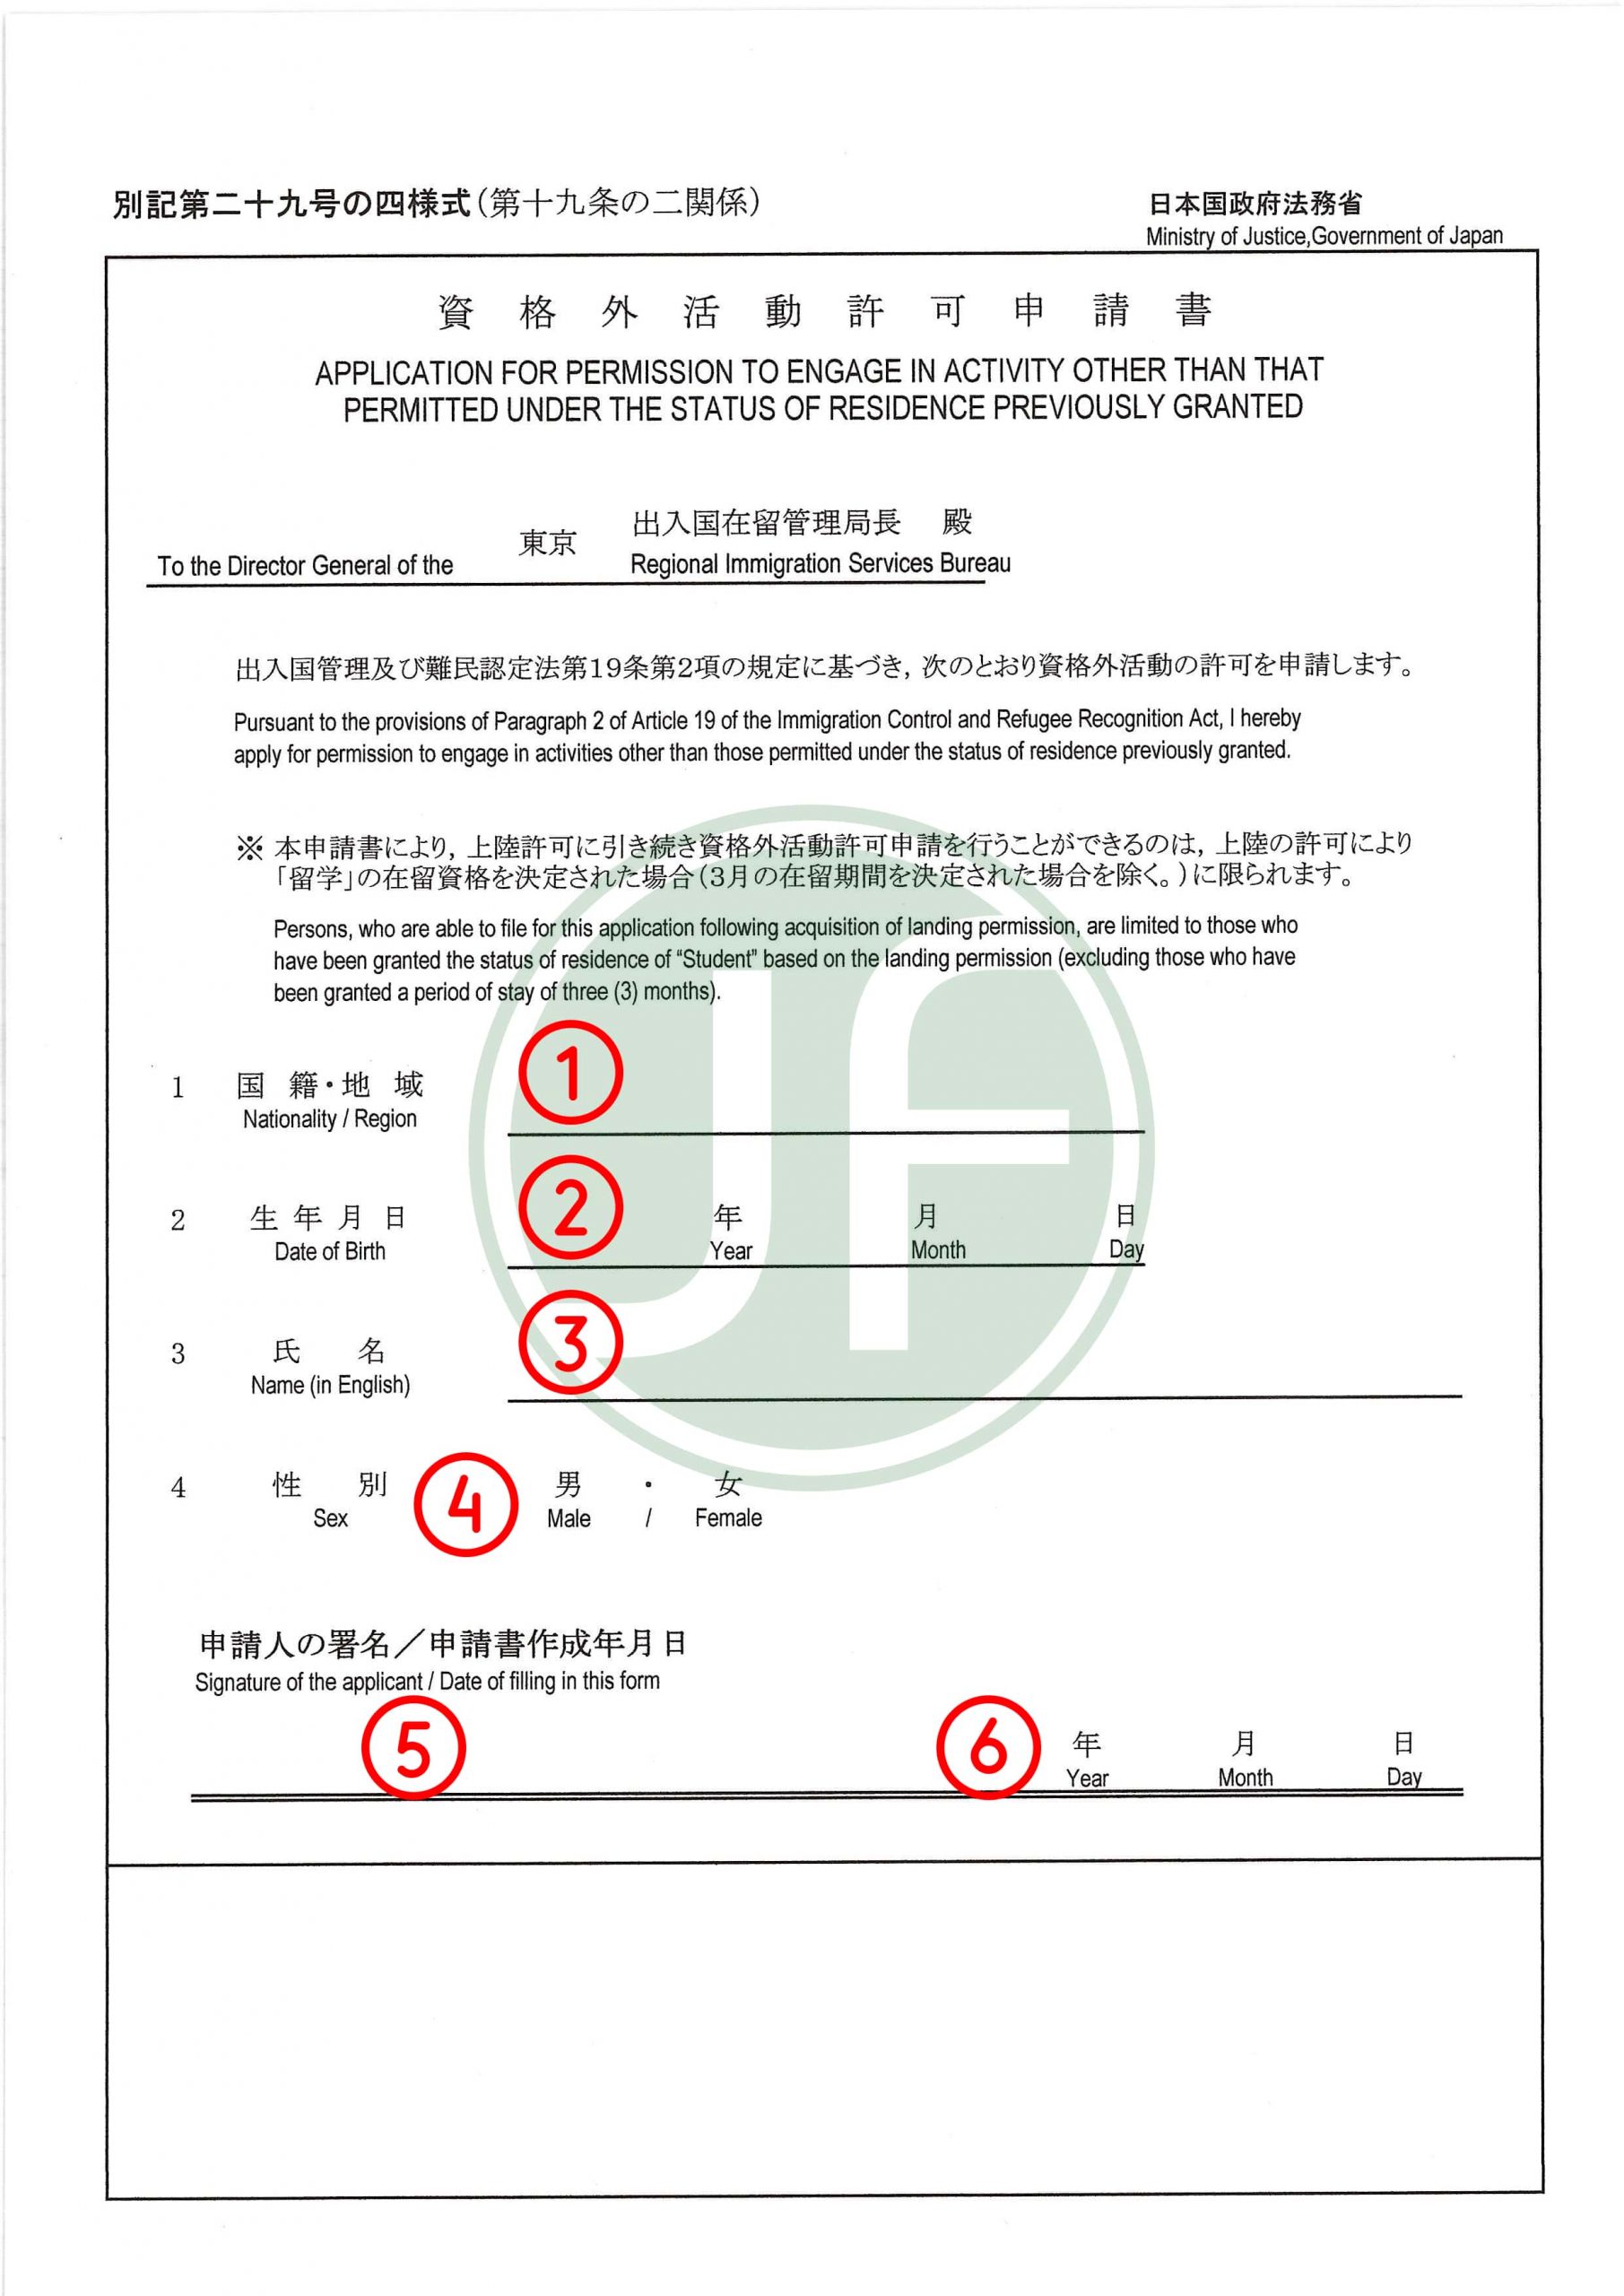 Form khai xin làm thêm tại Nhật